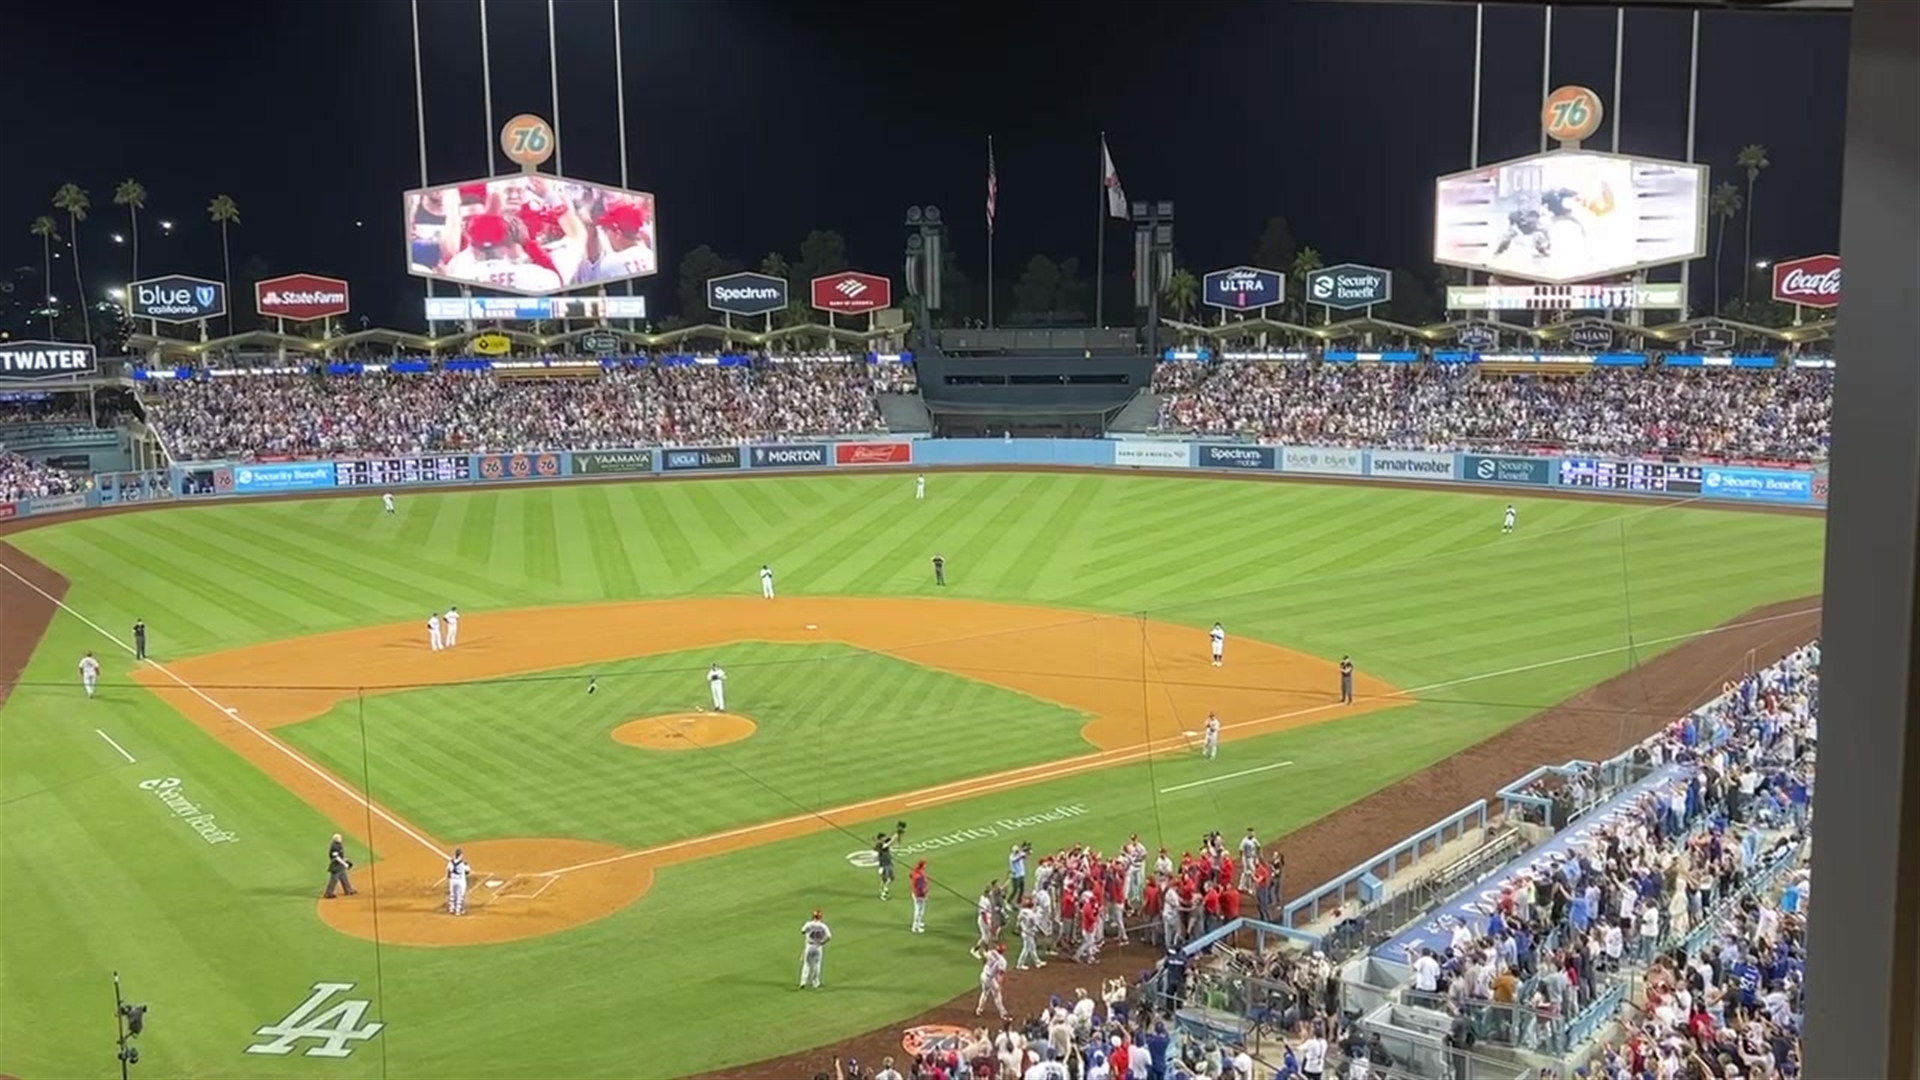 St. Louis Cardinals slugger Albert Pujols 'chases' baseball history: 700  home runs